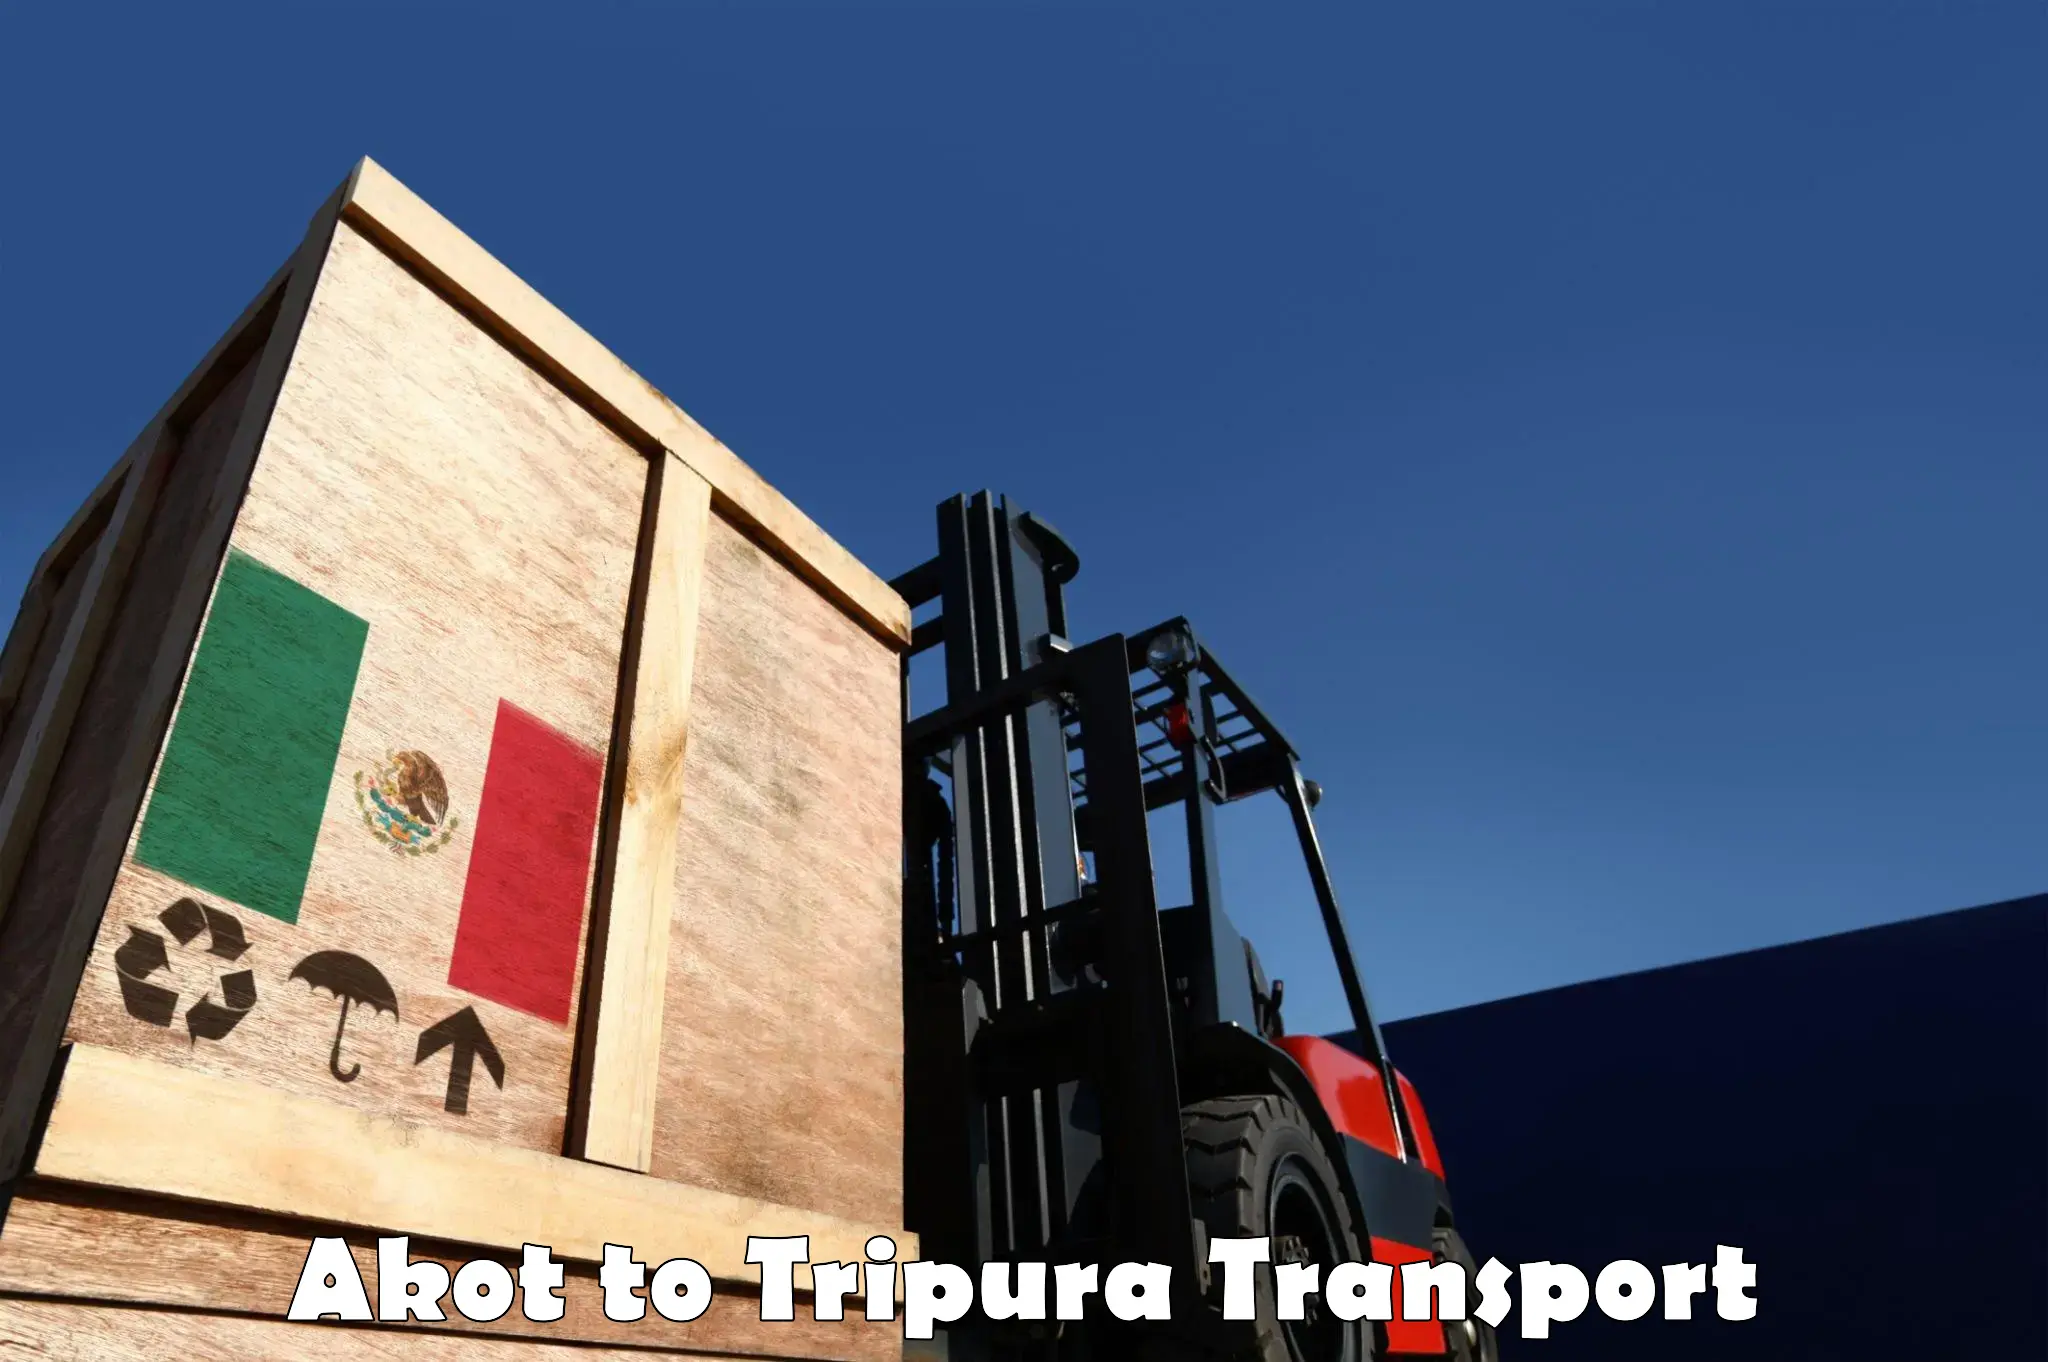 Online transport booking Akot to Udaipur Tripura